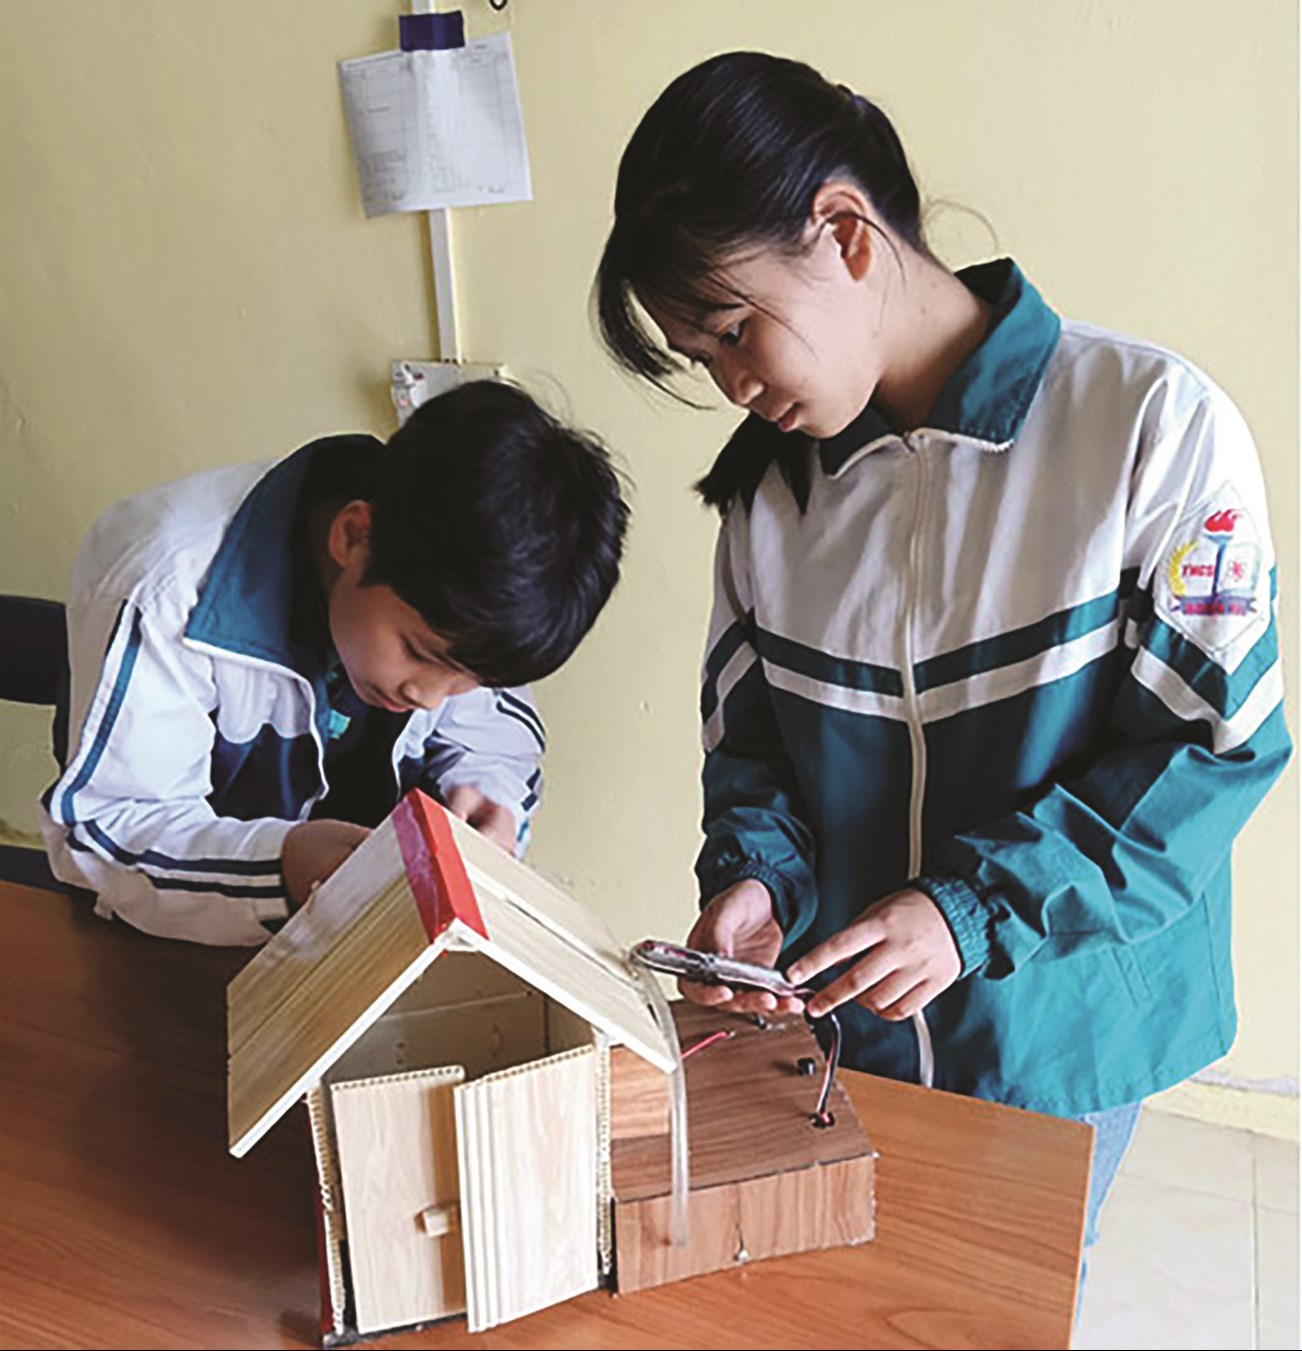 Giải pháp nào cho mô hình căn nhà thông minh ở Việt Nam